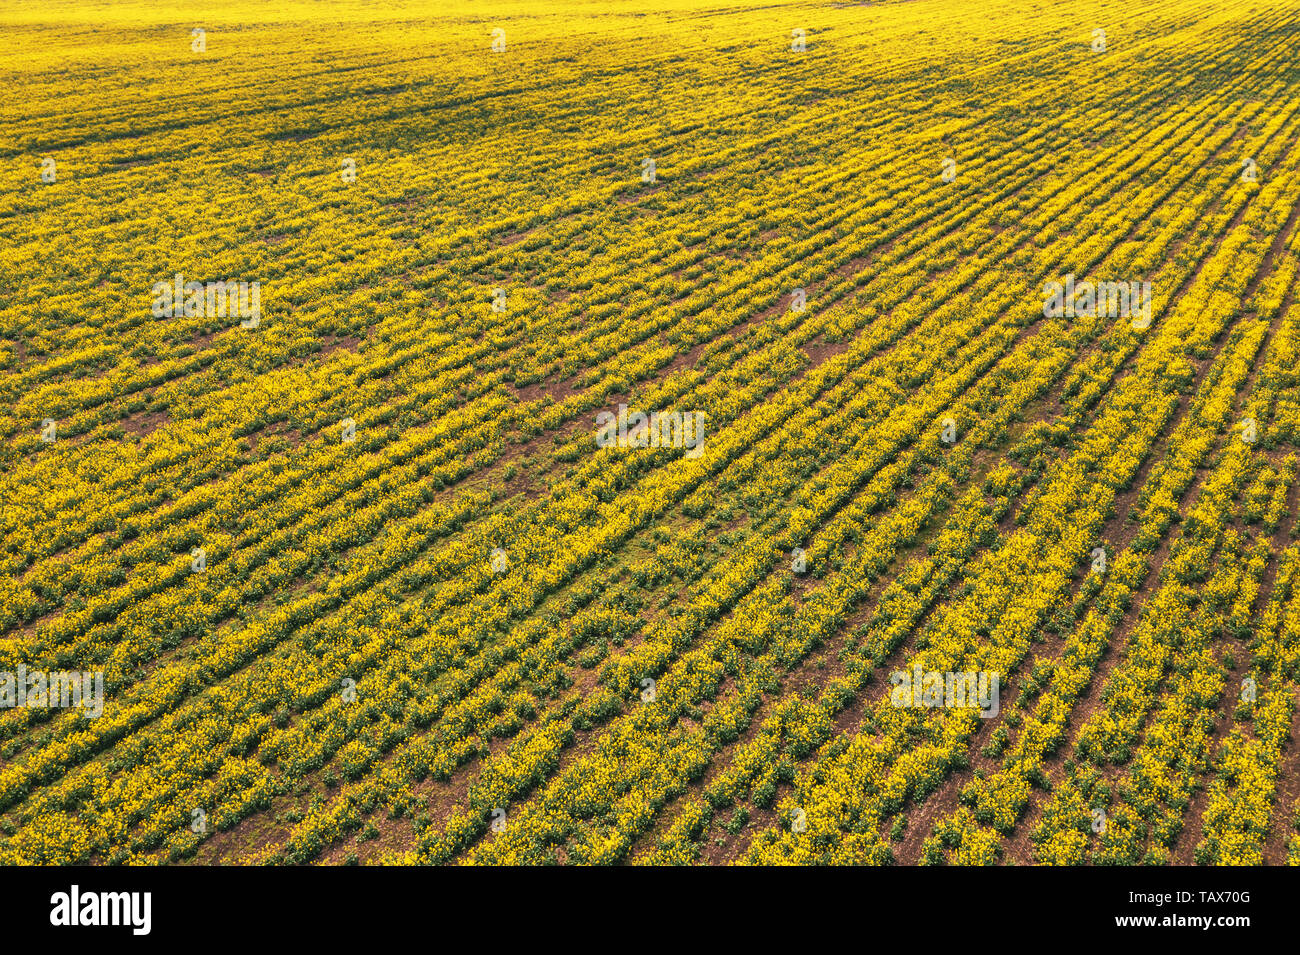 Vista aerea di canola campo di colza in cattivo stato a causa della siccità stagionale e clima arido Foto Stock